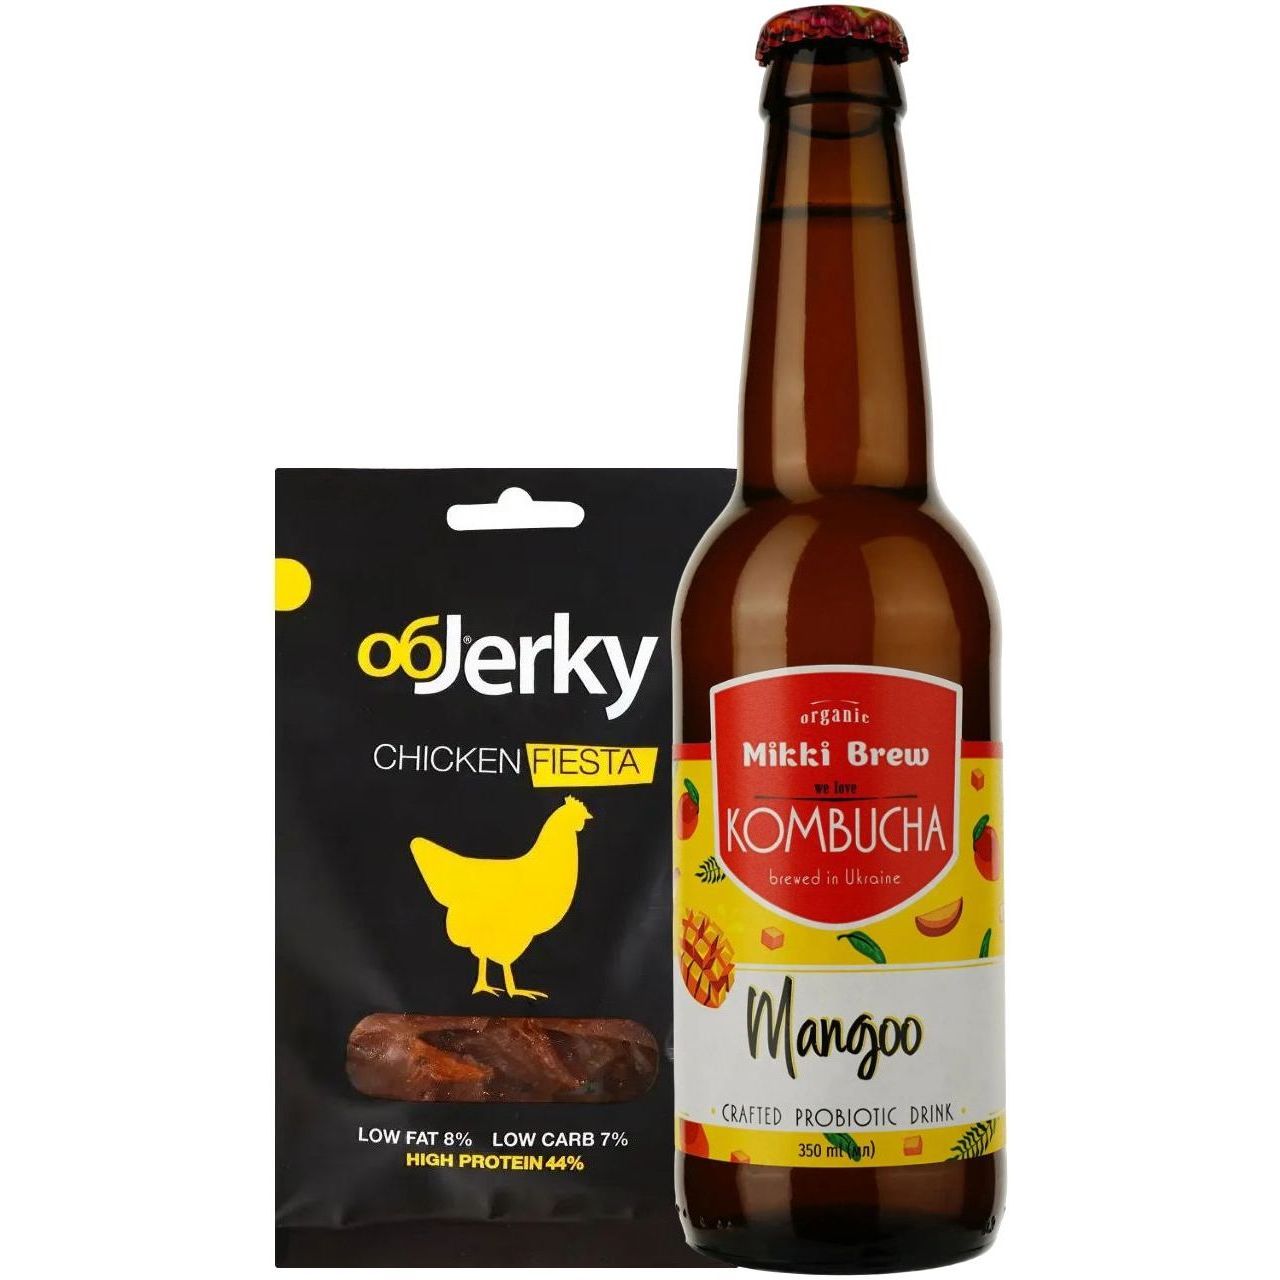 Набор: курятина Objerky Фиеста вяленая 25 г + напиток Mikki Brew Kombucha Mangoo 0.35 л - фото 1